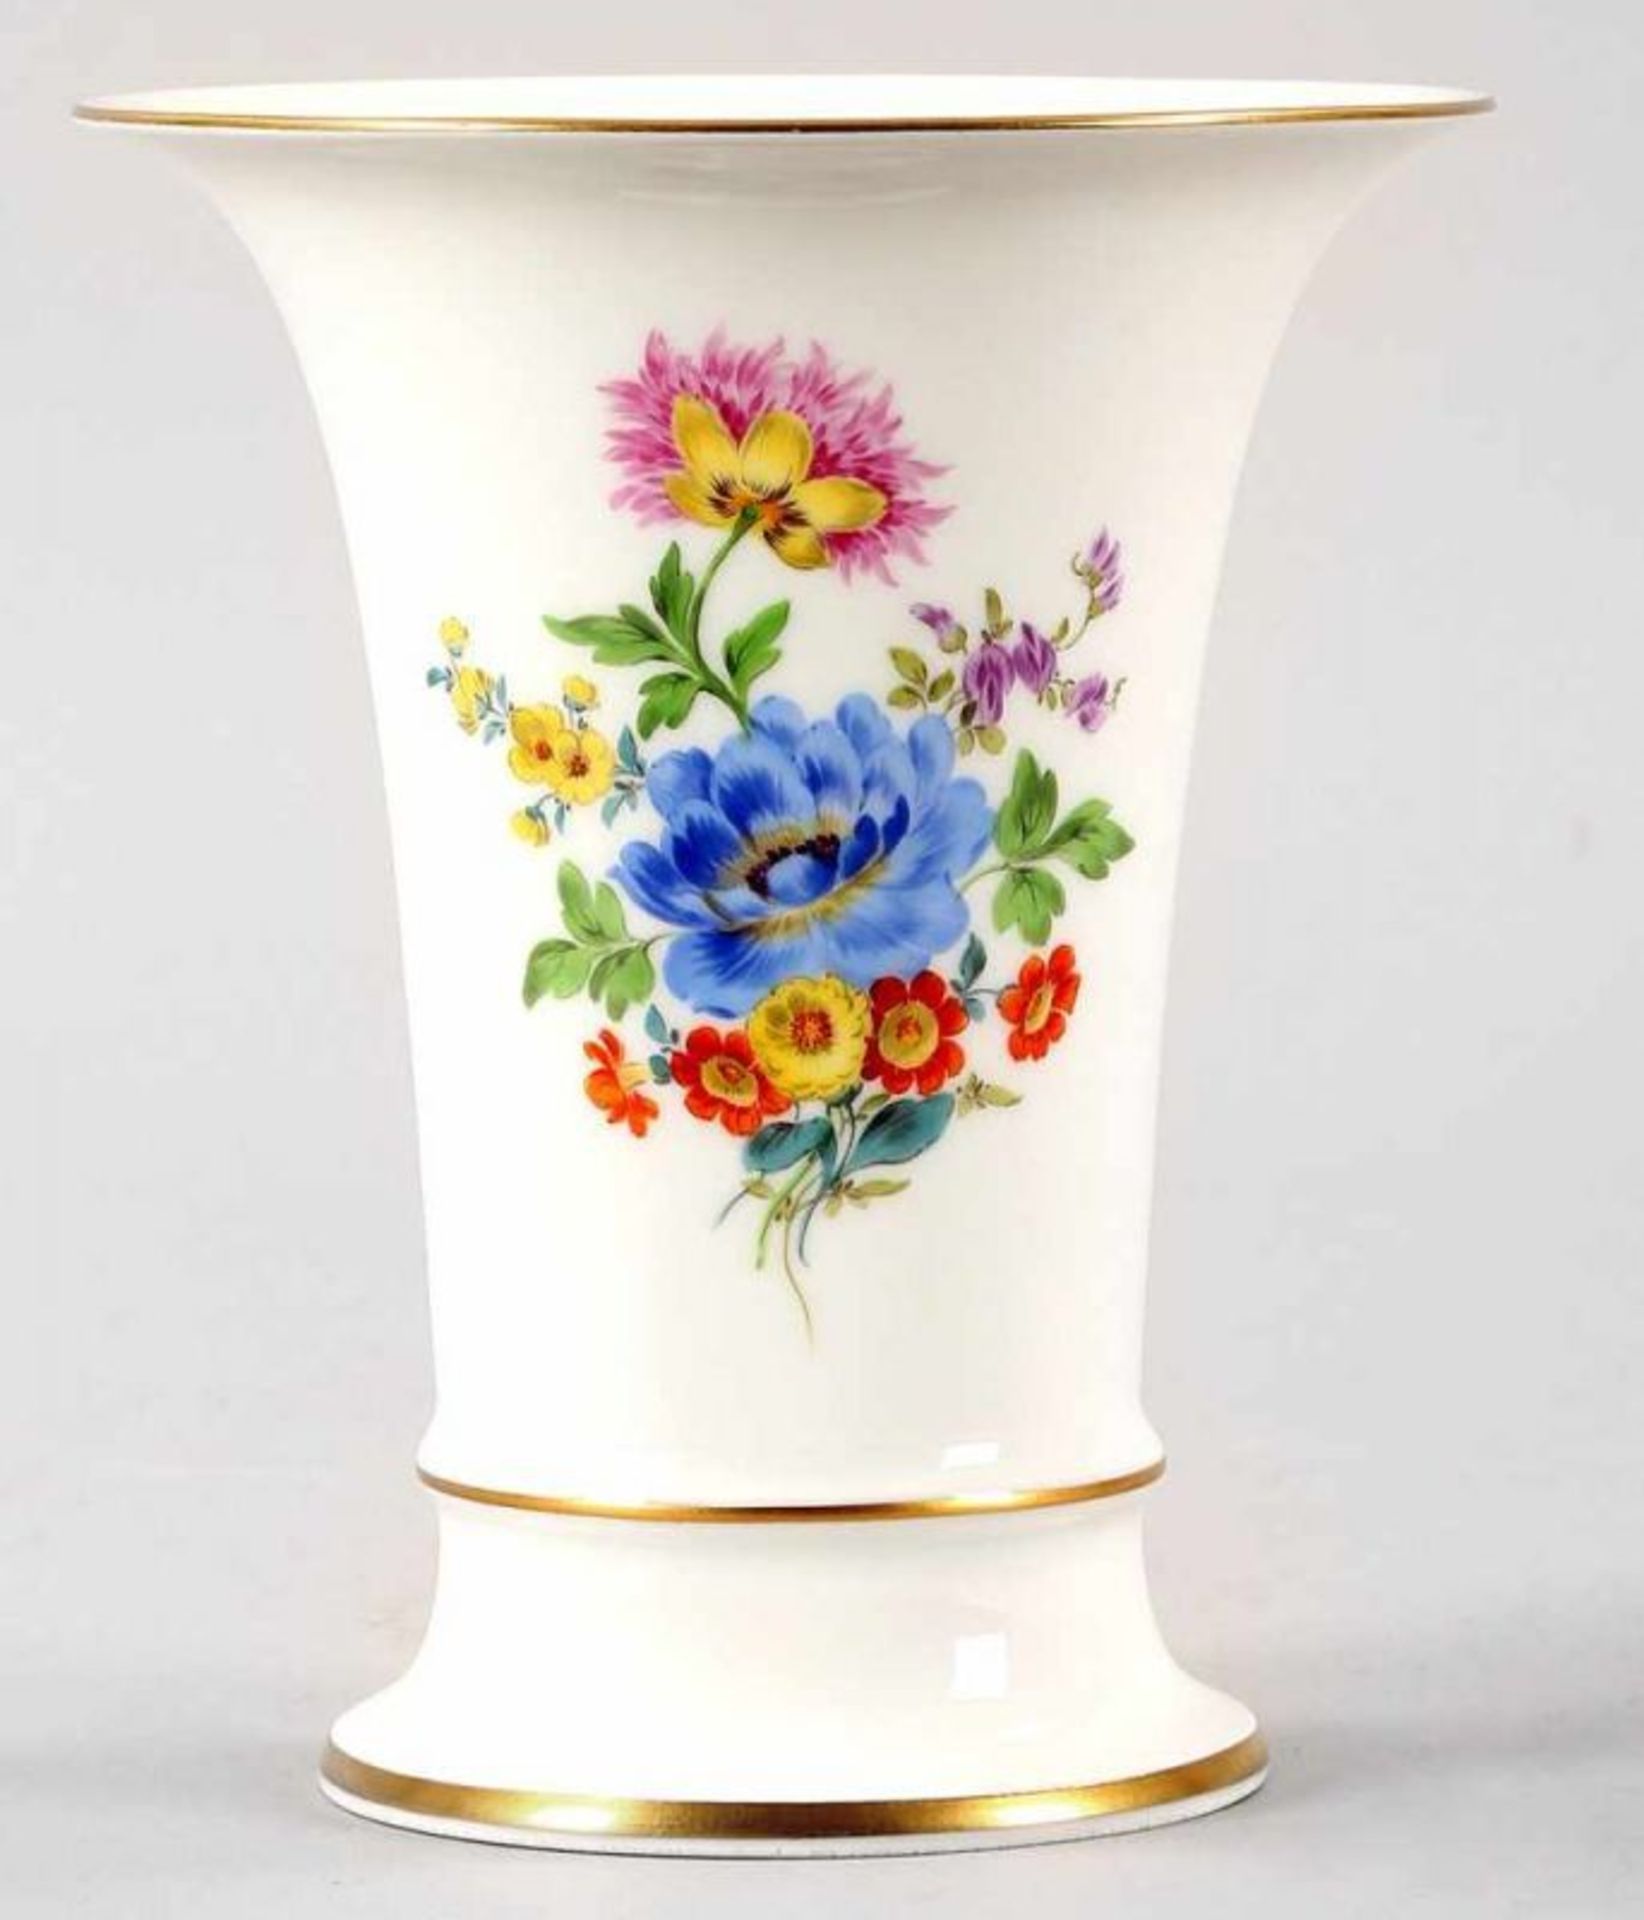 Kl. Vase Porzellan, Meissen, 20.Jh. Krater-Form. Auf der Wandung polychrome Bouquet- u. Blumen-